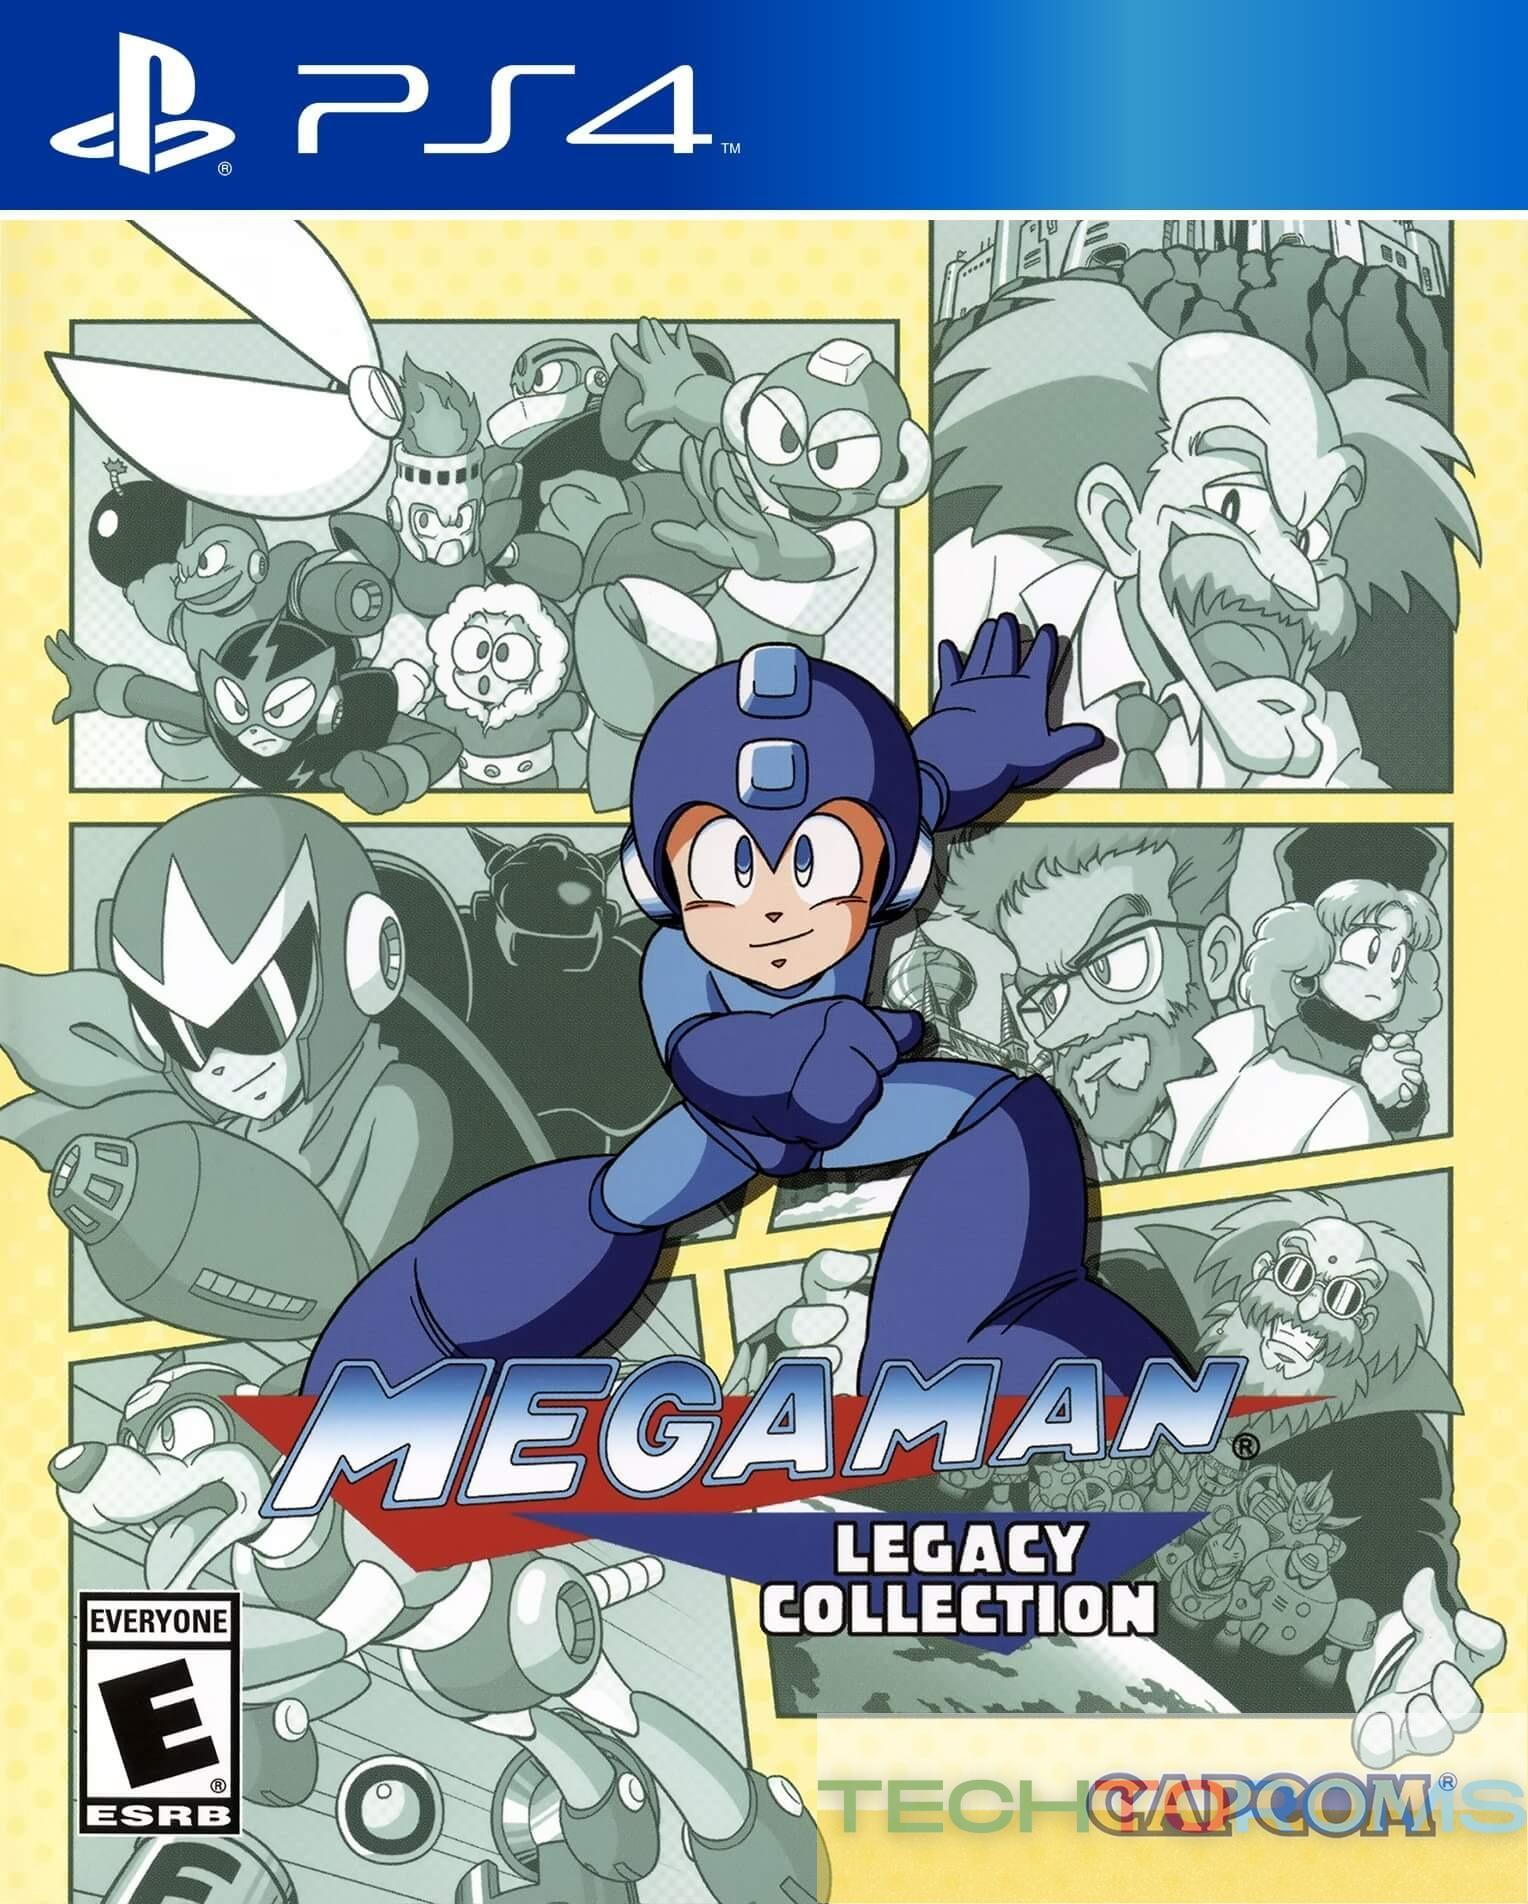 Mega Man Coleção Legacy